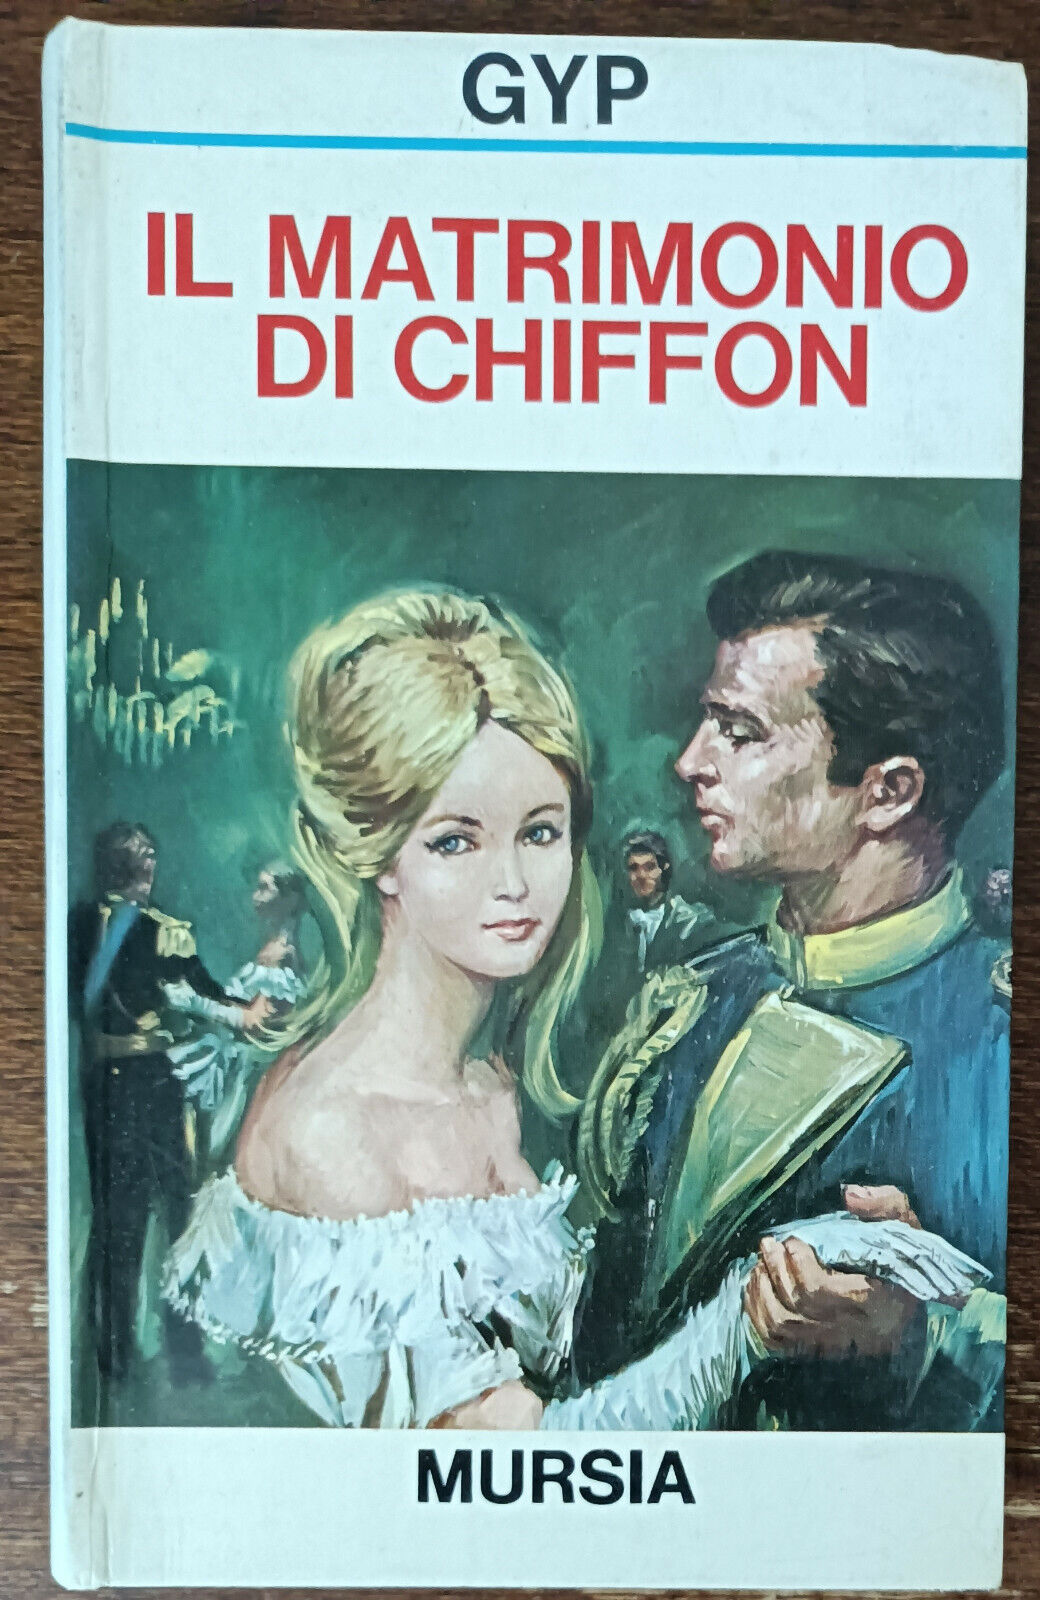 Il matrimonio di Chiffon - Gyp - Mursia, 1973 - A